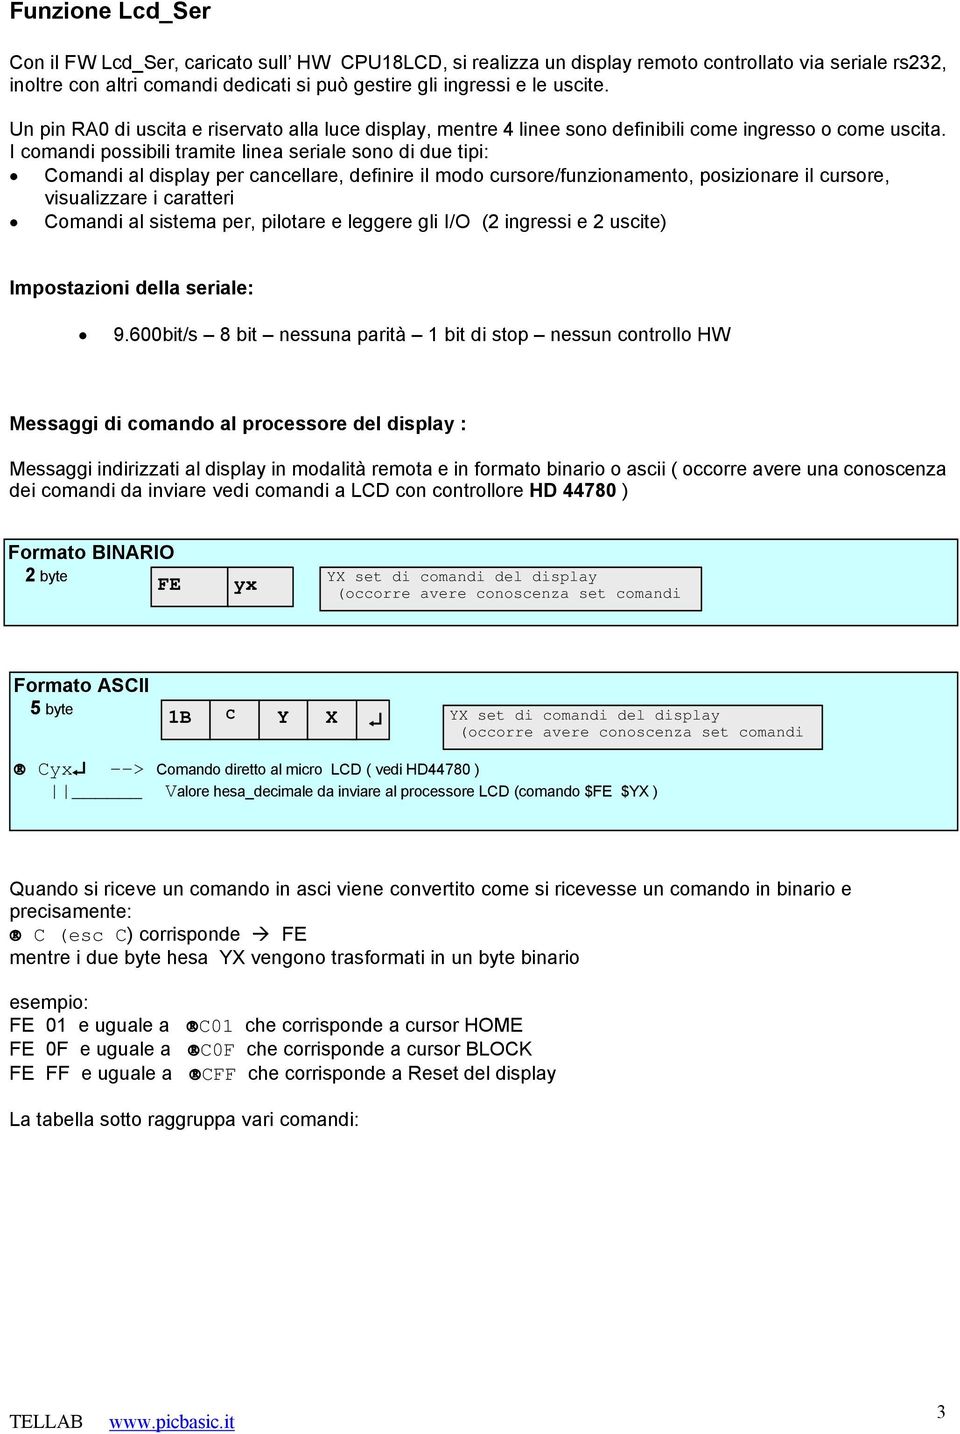 I comandi possibili tramite linea seriale sono di due tipi: Ää Comandi al display per cancellare, definire il modo cursore/funzionamento, posizionare il cursore, visualizzare i caratteri Äã Comandi